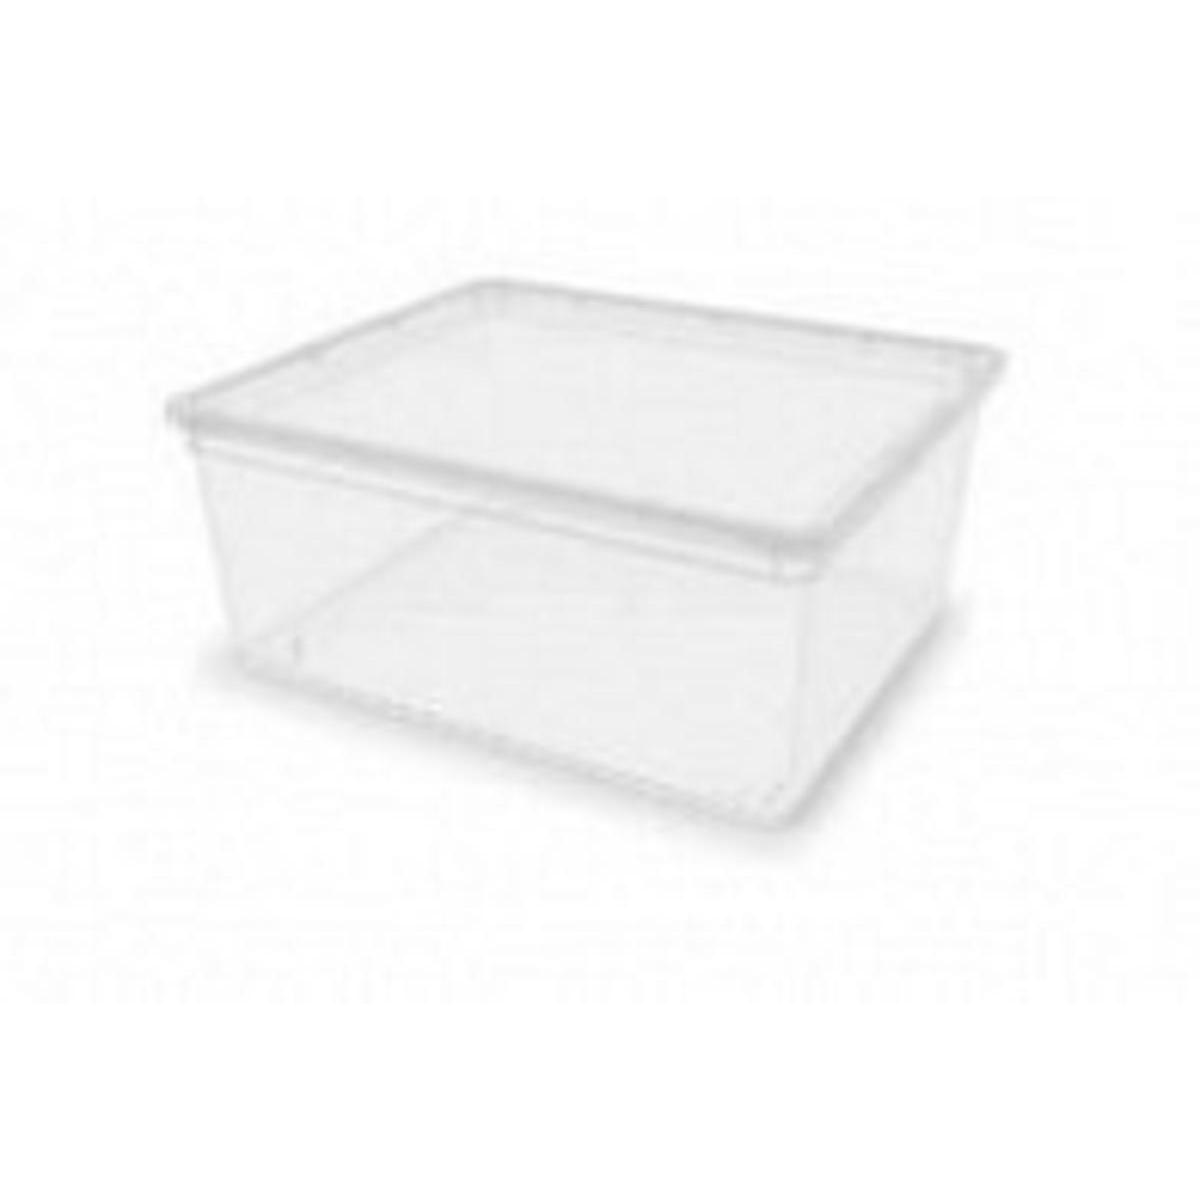 Lot de 6 boîtes de rangement en plastique transparent 22L avec couvercle  CLEAR BOX